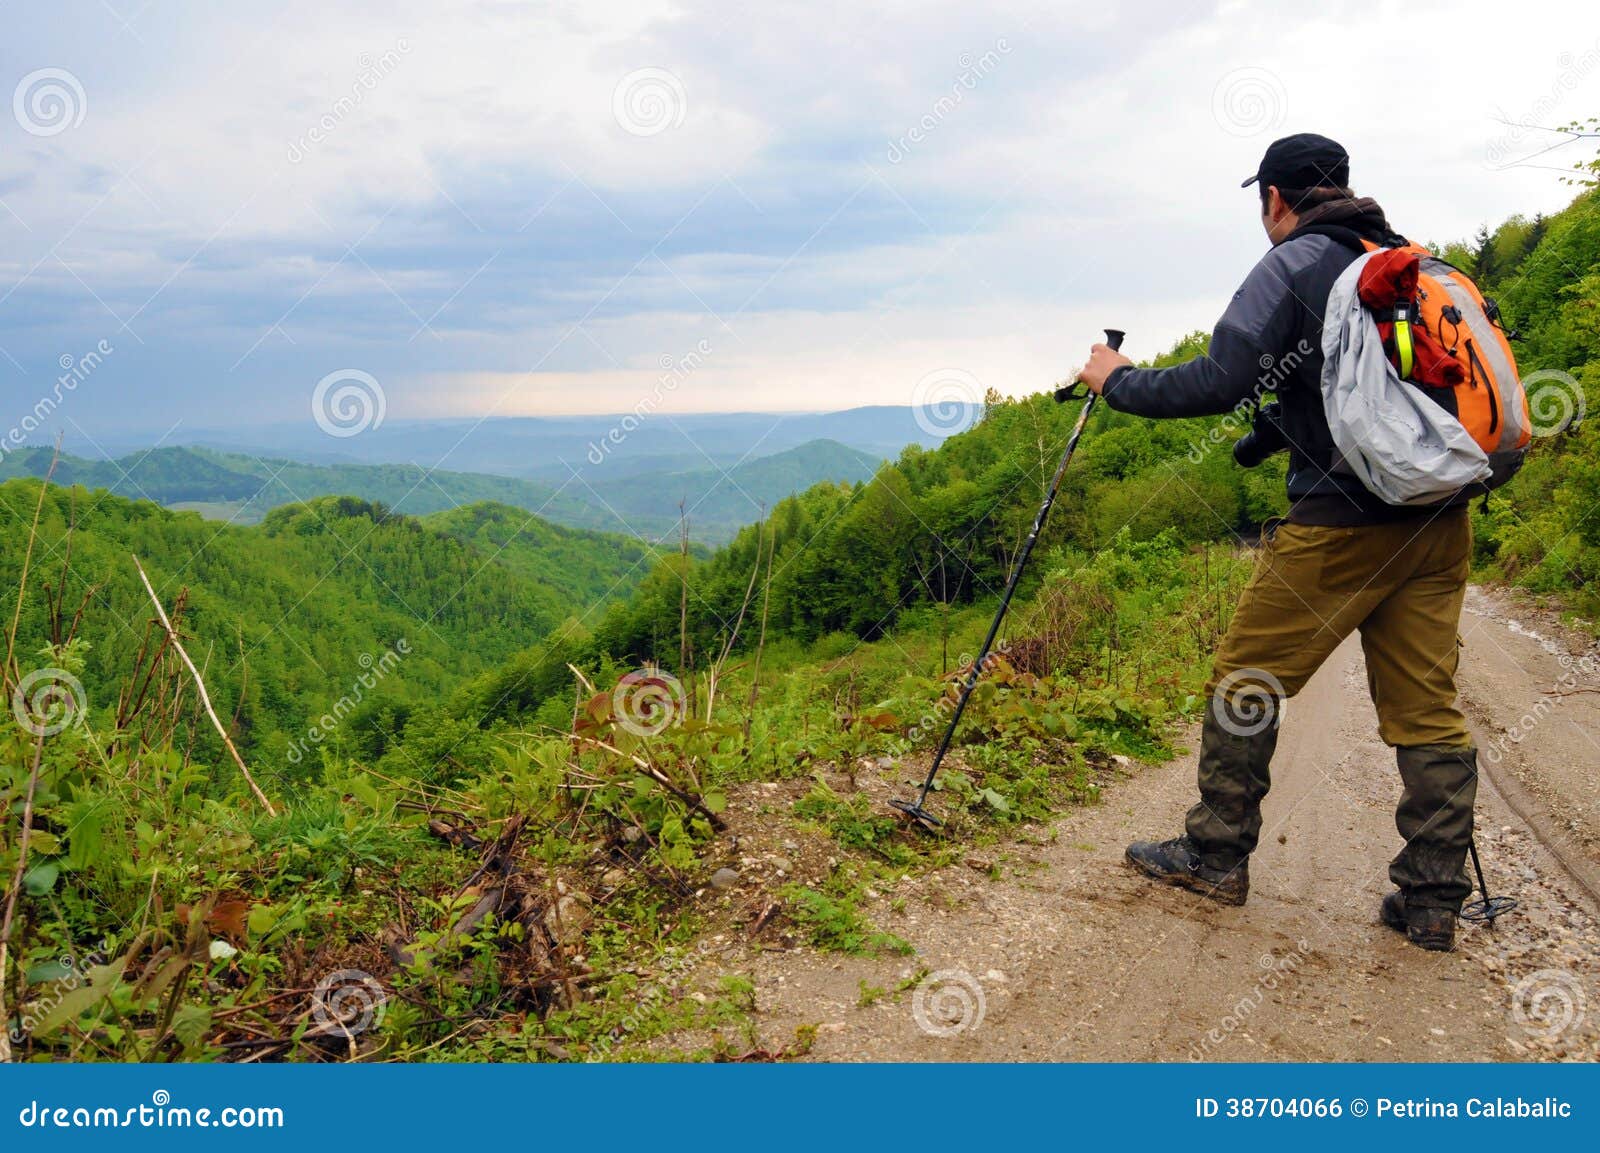 hiker on a mounatin trek